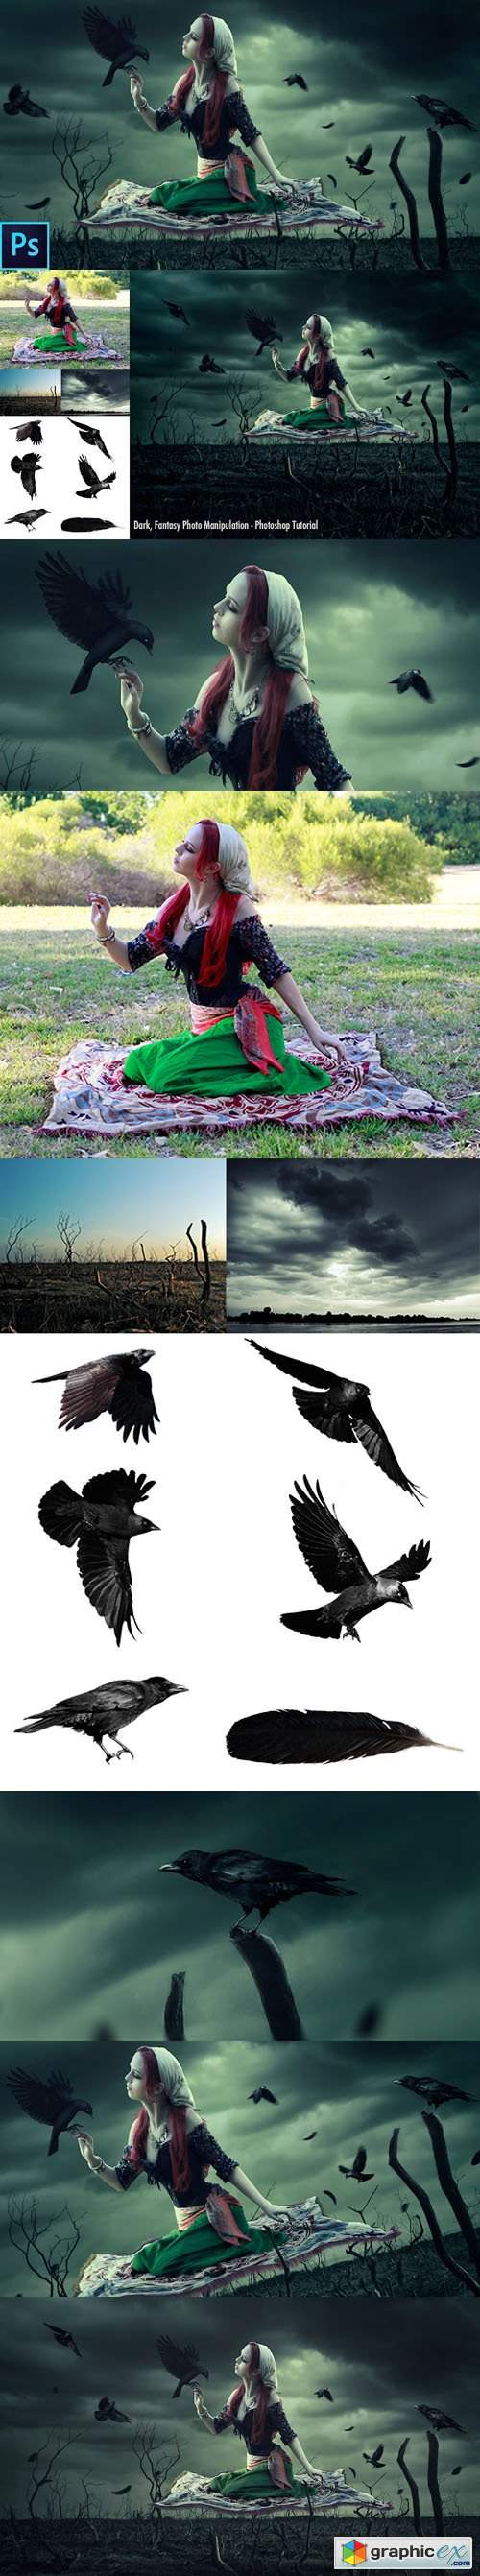  Dark Fantasy Photo Manipulation Effects for Photoshop + Tutorial 